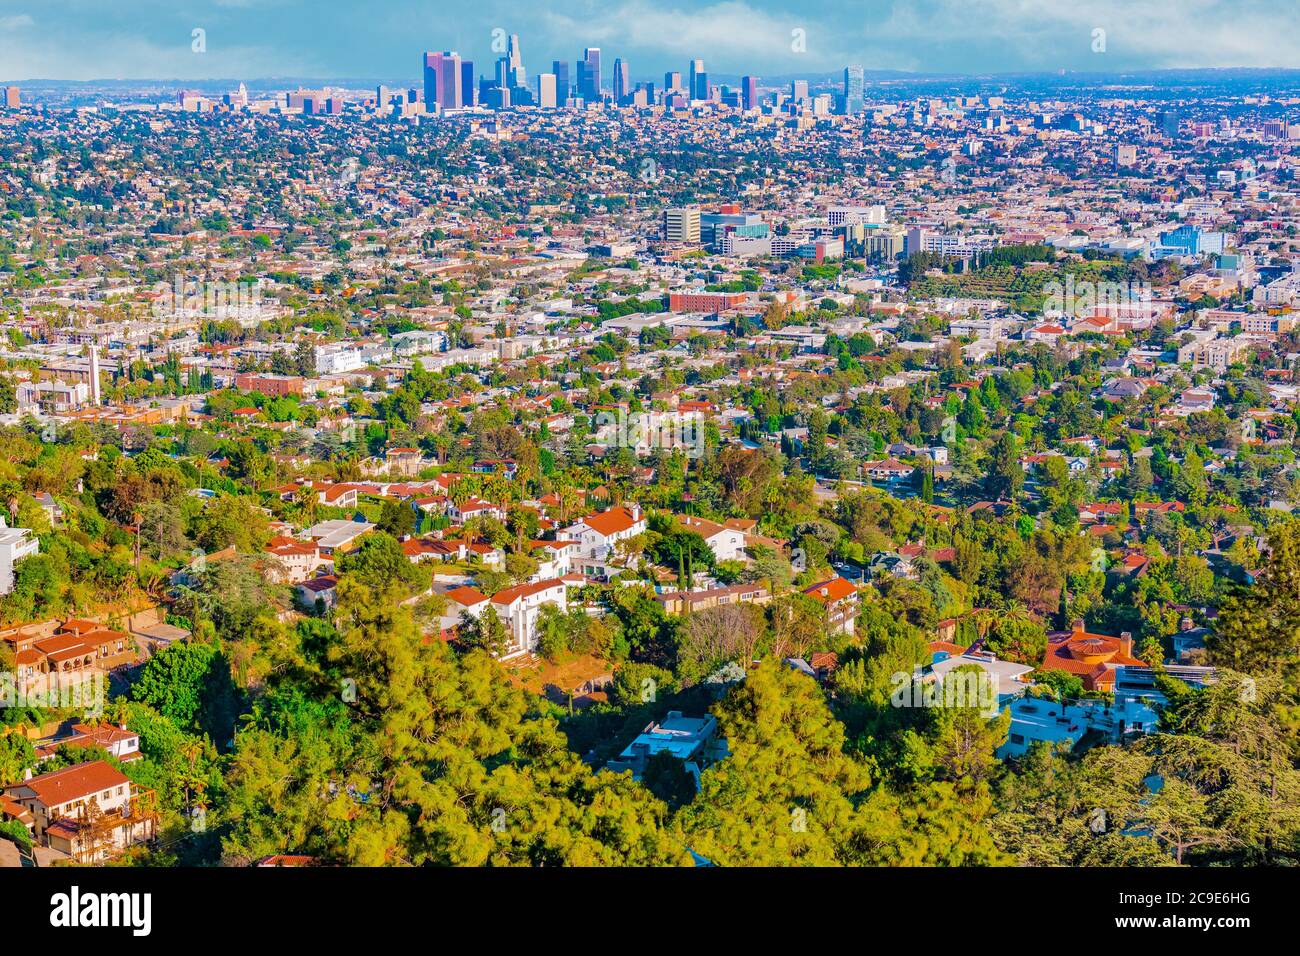 Una vista in cima a una collina della distesa urbana di Los Angeles mostra i grattacieli in lontananza e le case costruite sulle colline in primo piano. Foto Stock